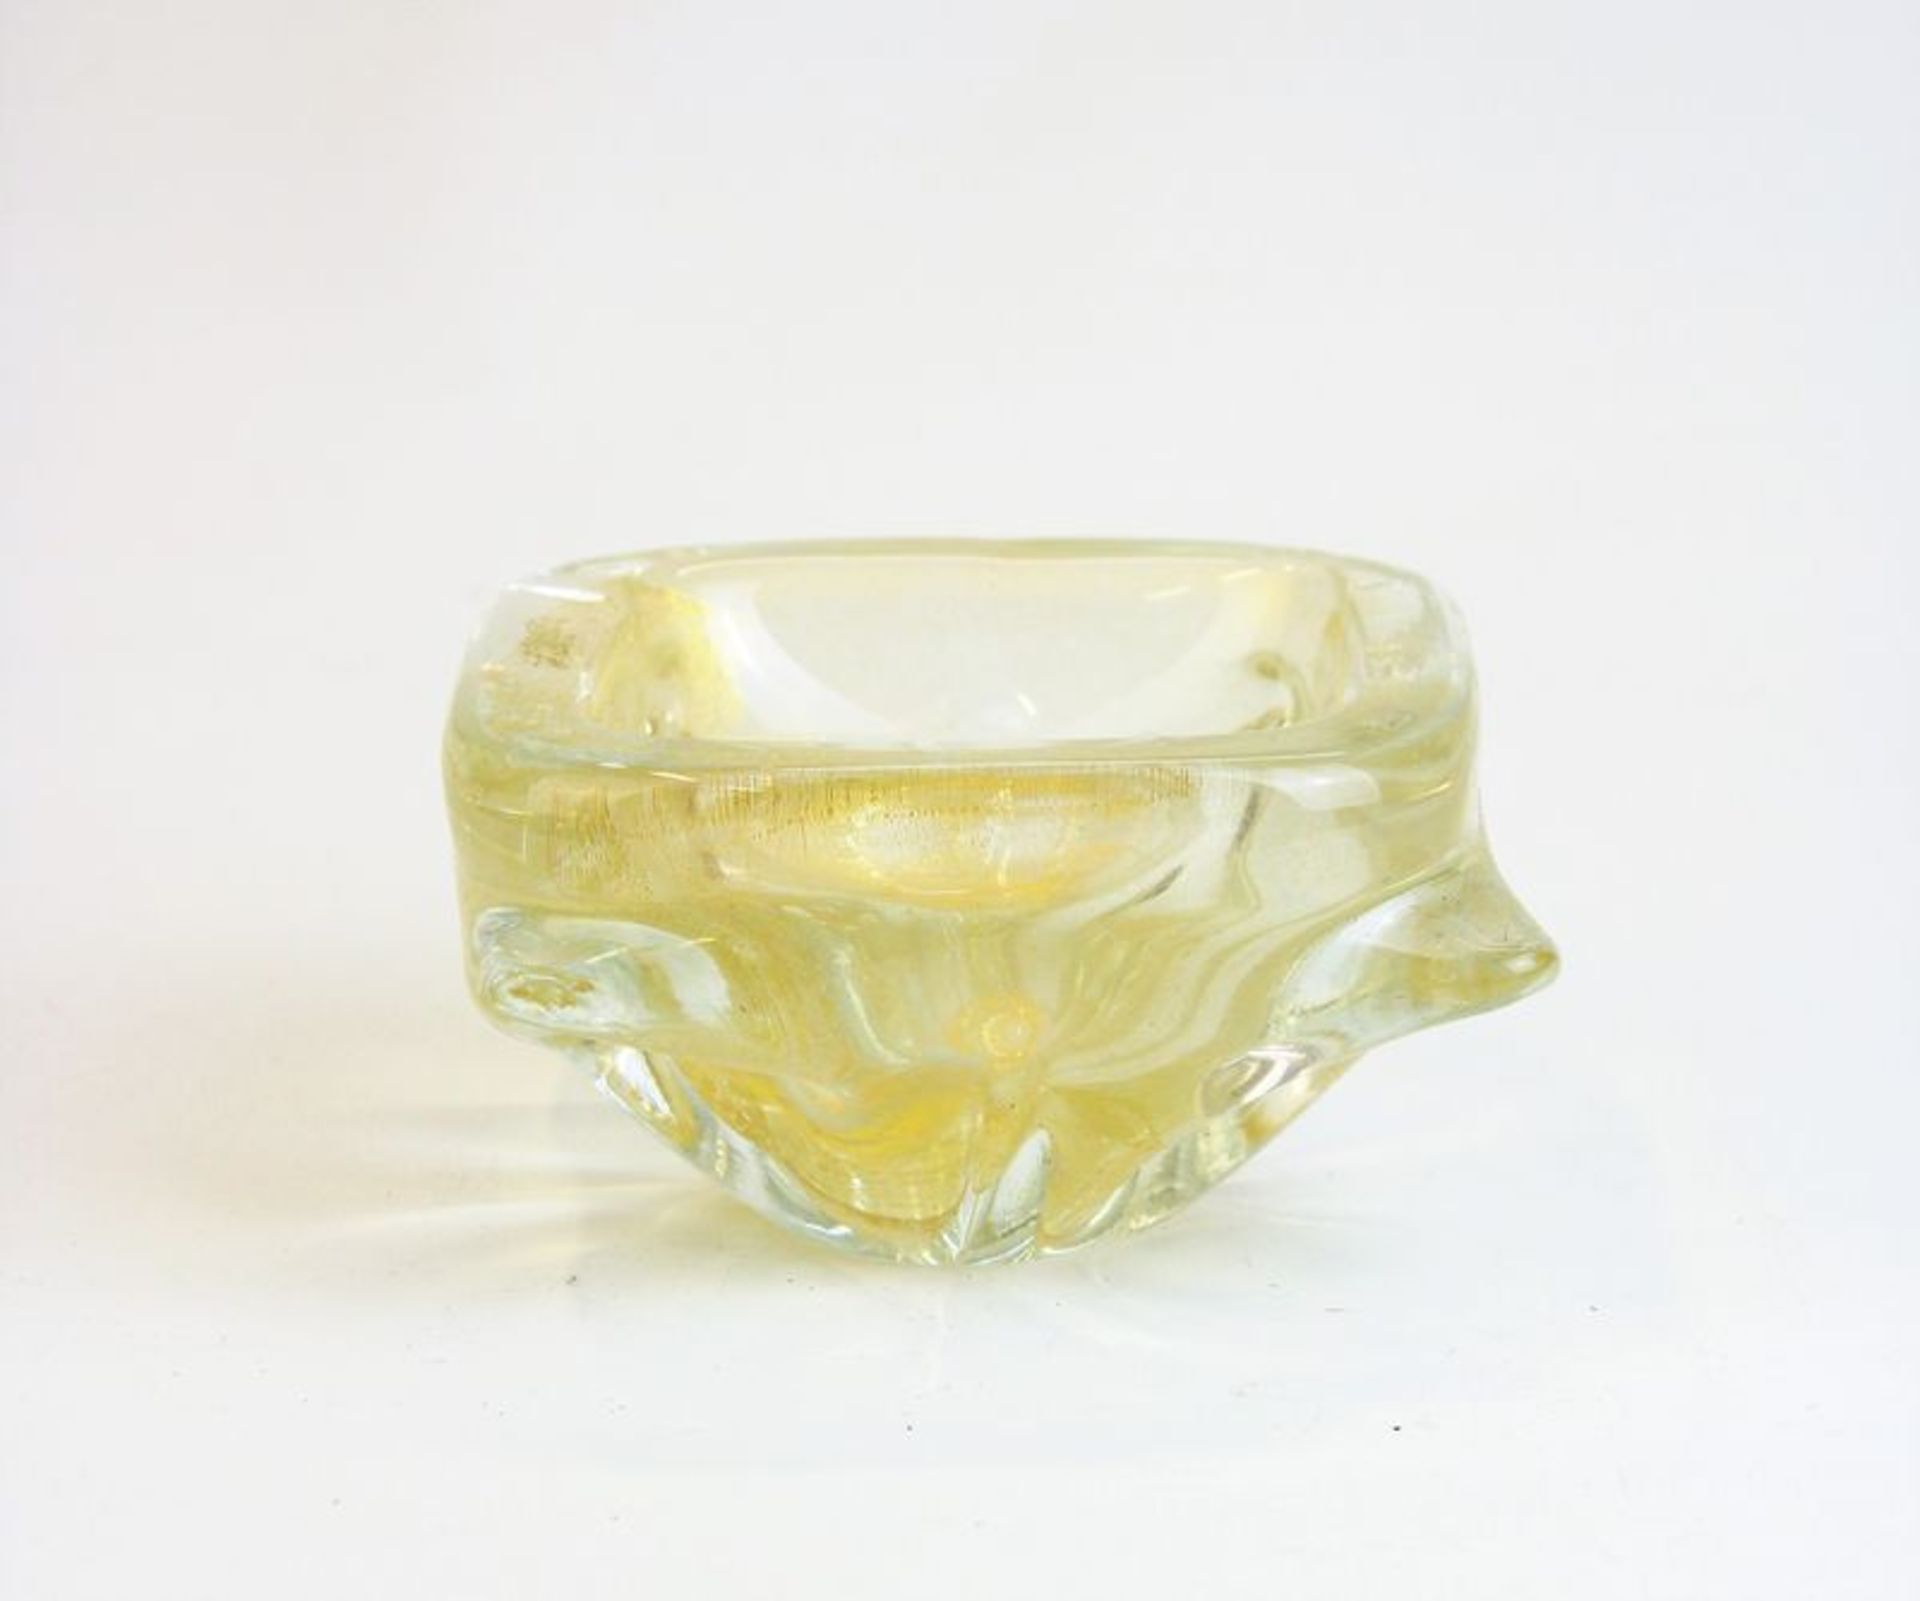 Murano Glasvasefarbloses Glas mit Goldblatt-Einschmelzungen, Maße: ca. 12 cm x 13 cm x 7 cm